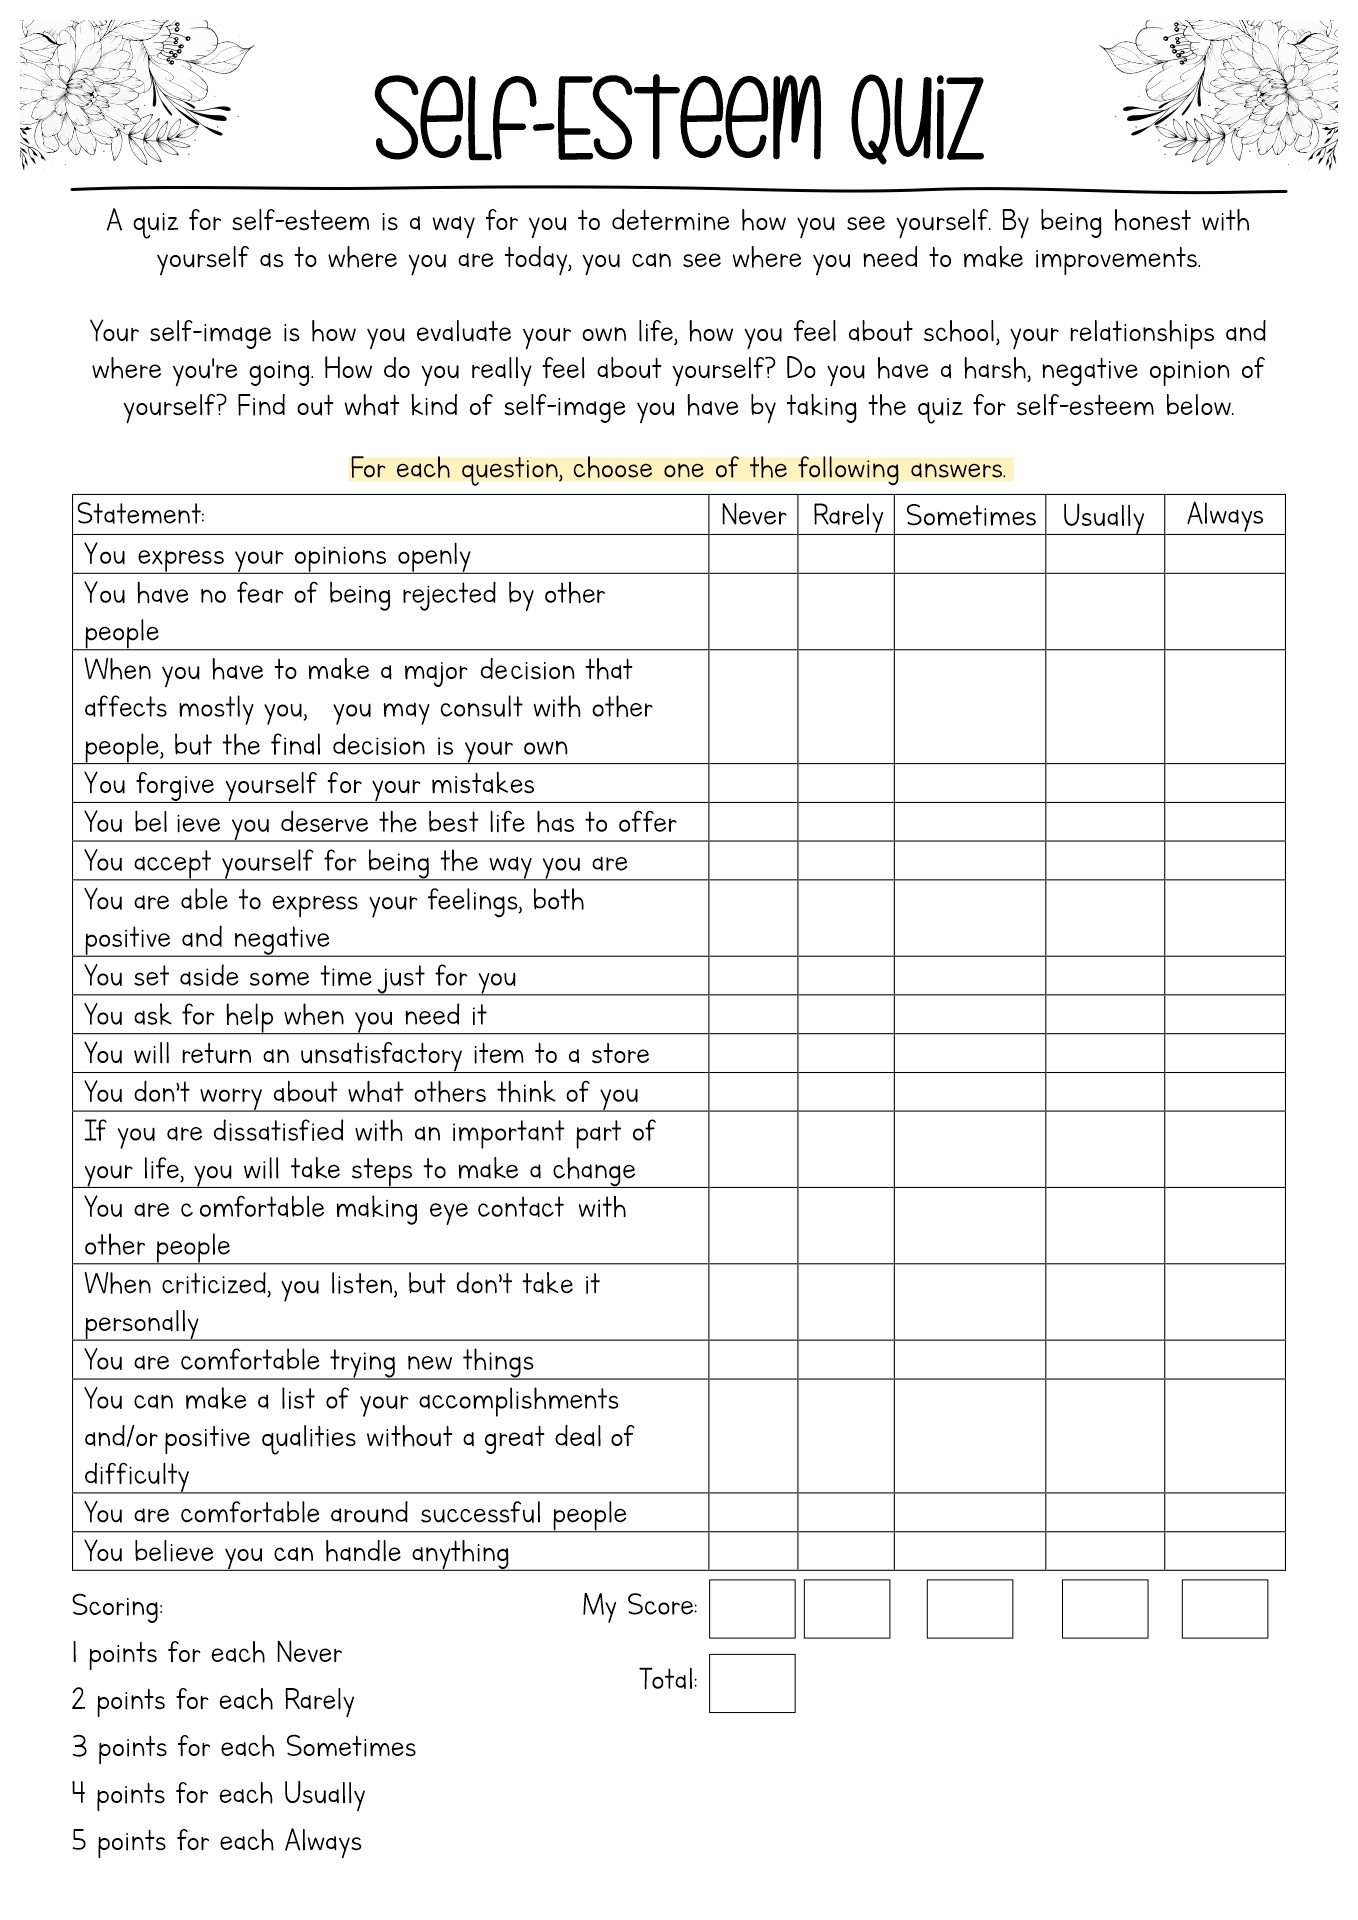 Self-Esteem Assessment Worksheet for Adults Image